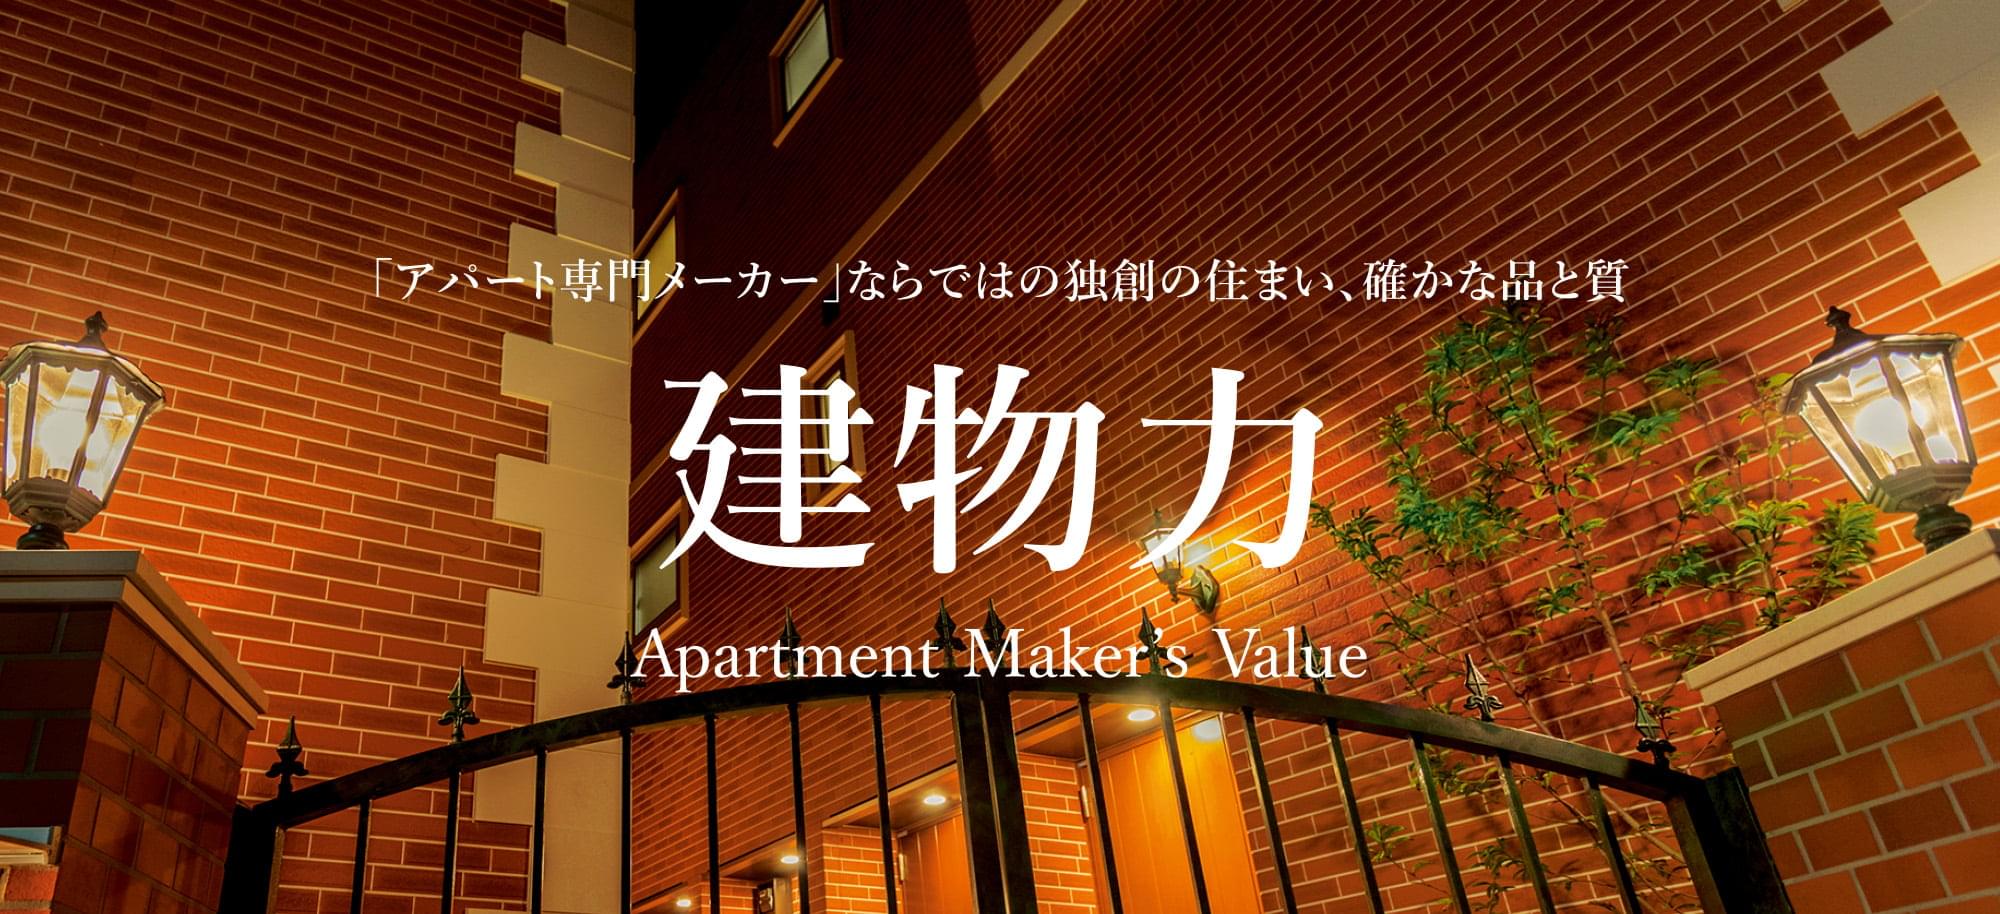 「アパートメーカー」ならではの独創の住まい、確かな品と質「建物力」